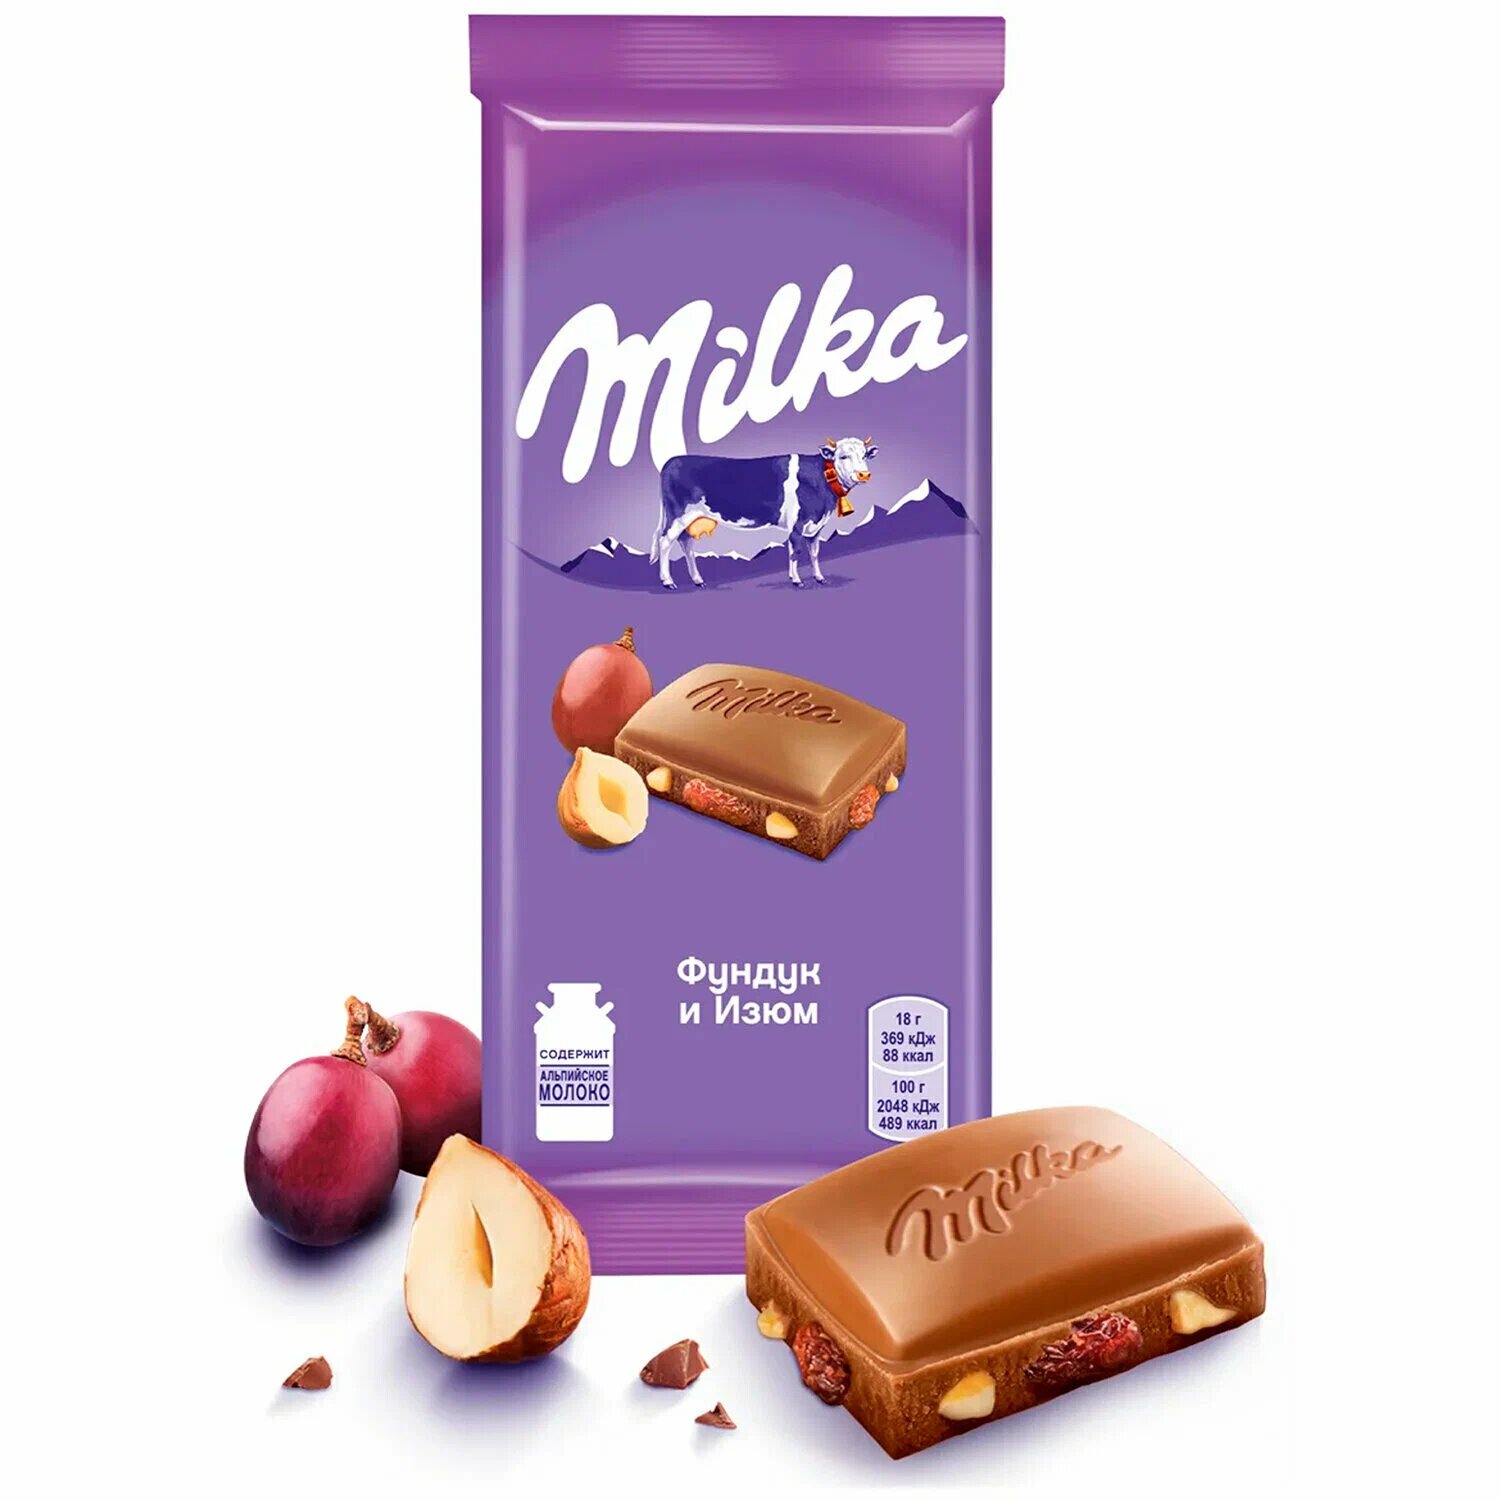 Шоколад MILKA (милка) молочный начинка фундук, изюм 85 г